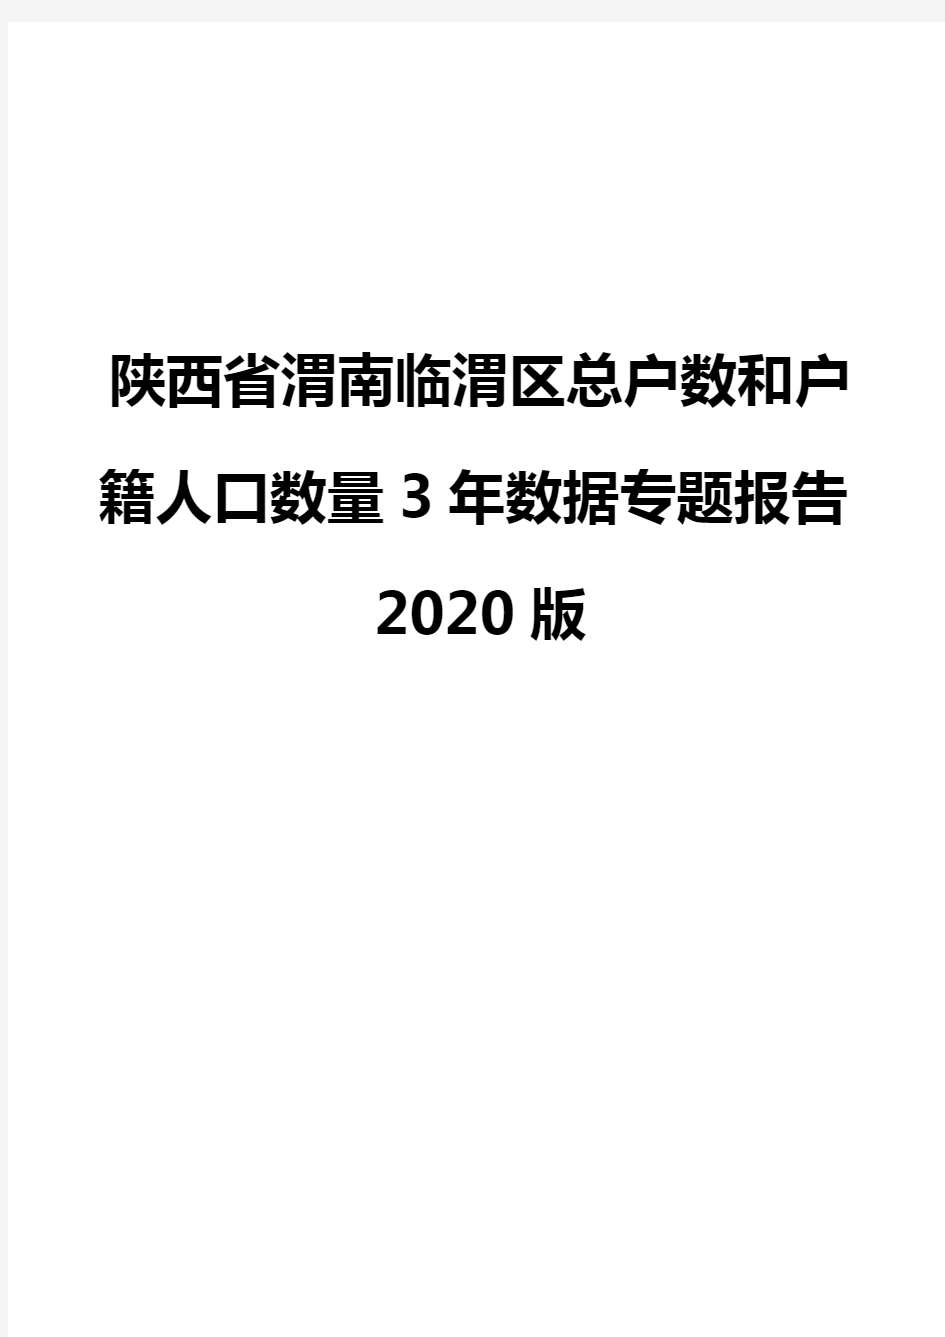 陕西省渭南临渭区总户数和户籍人口数量3年数据专题报告2020版